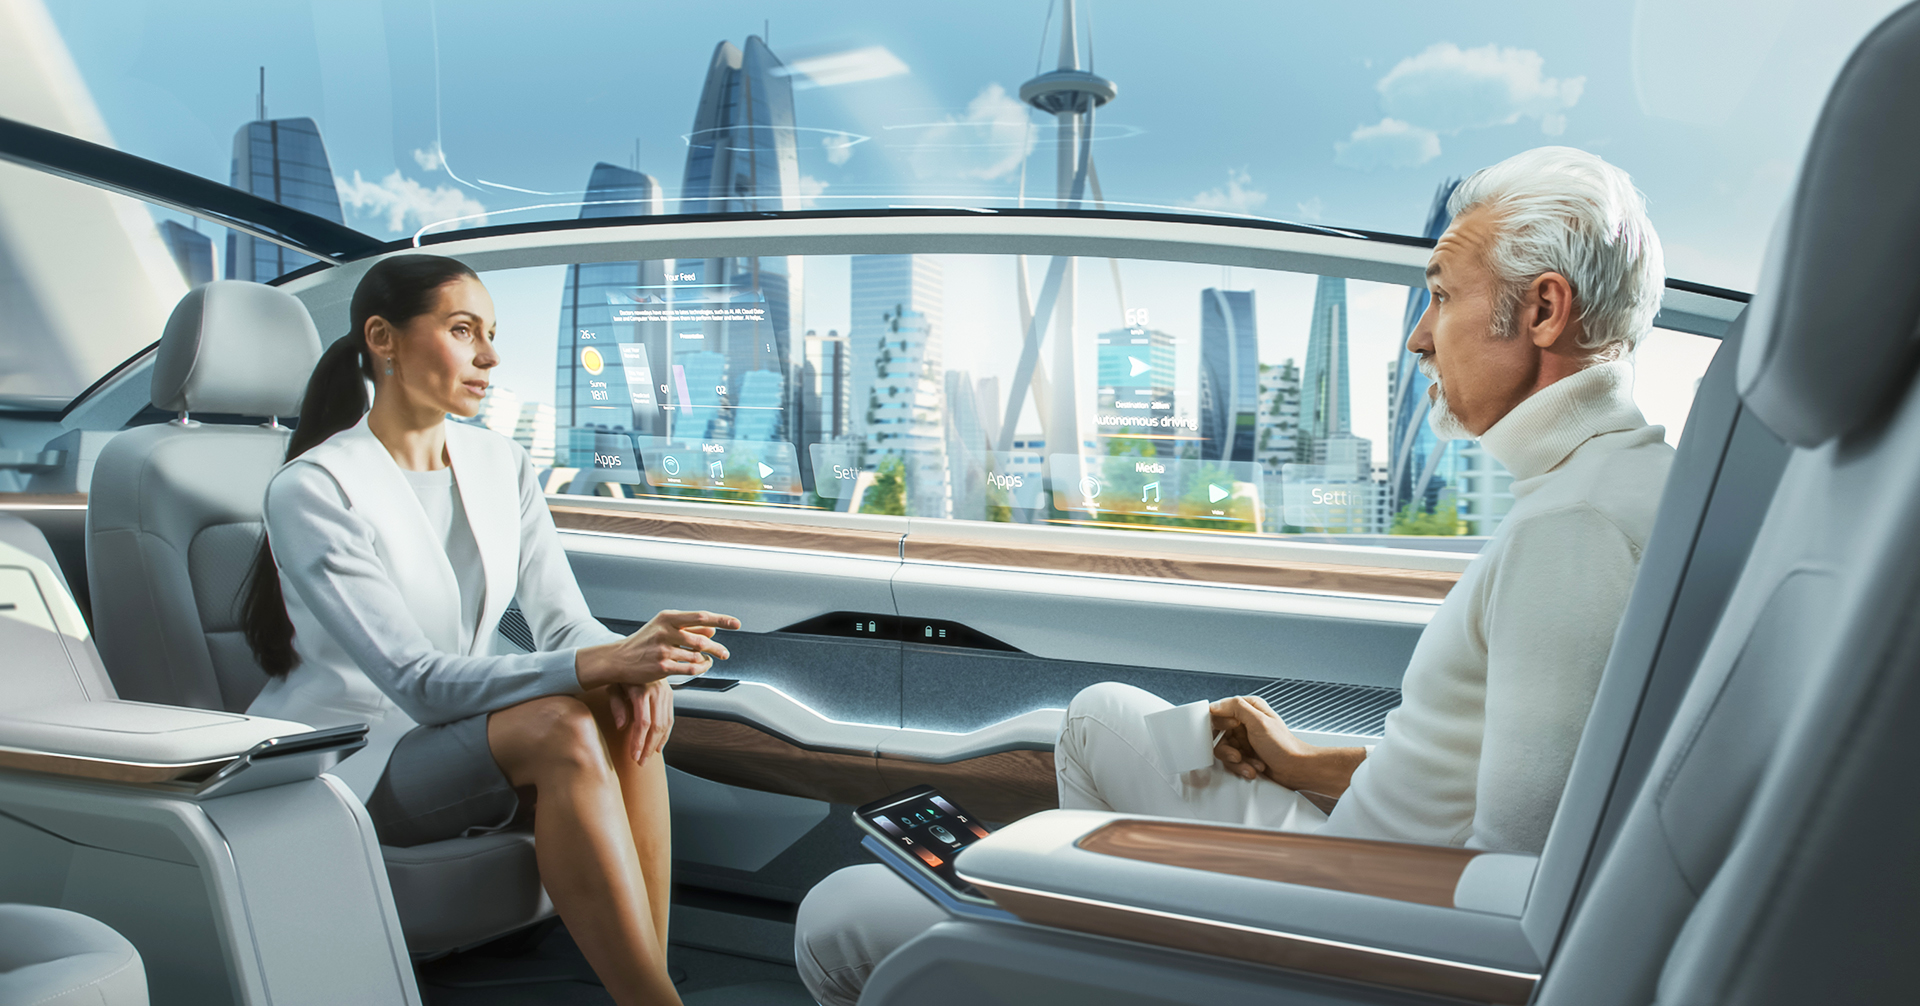 大众电脑ADD在未来自驾车时代将转变为车内虚拟图像投影。